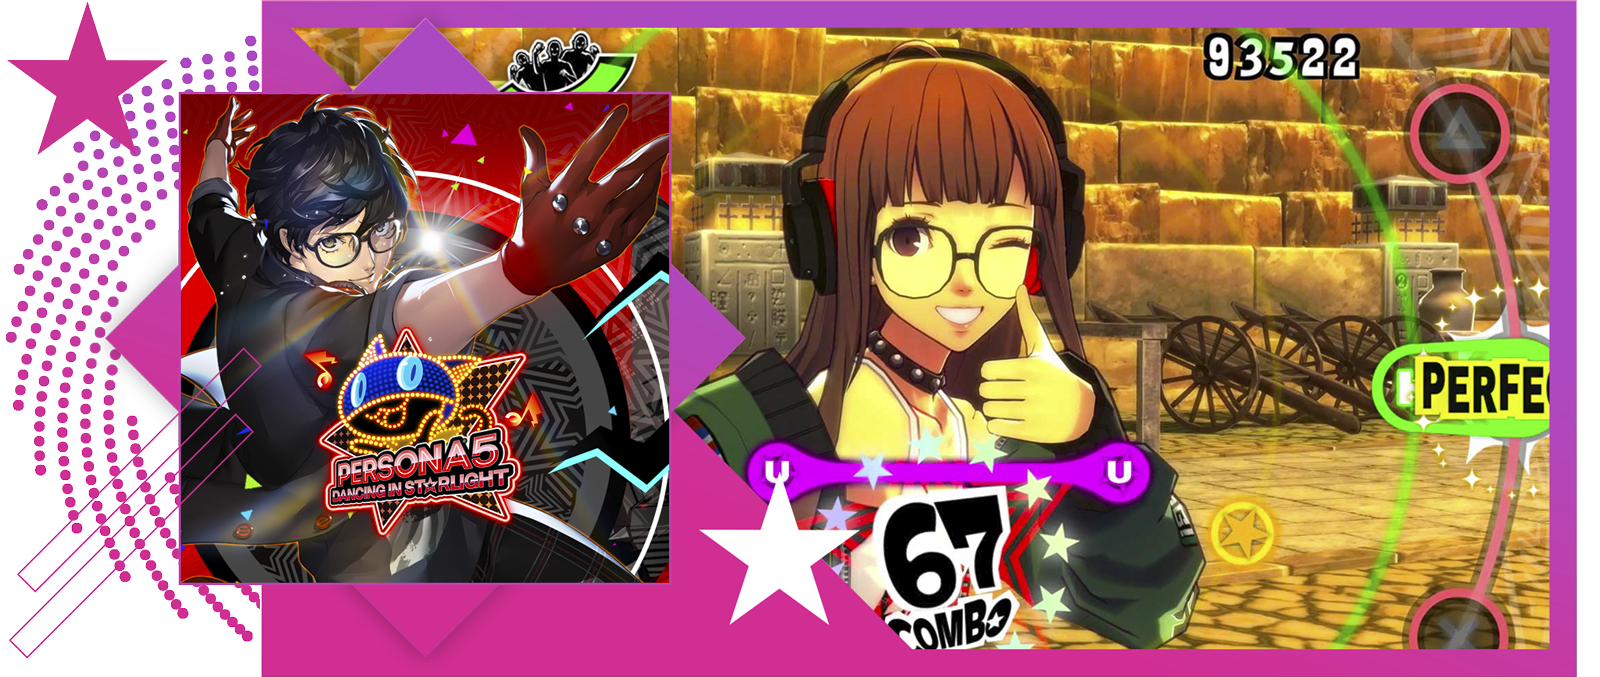 Imagen destacada Mejores juegos de ritmo con arte principal y juego de Persona 5: Dancing in Starlight.